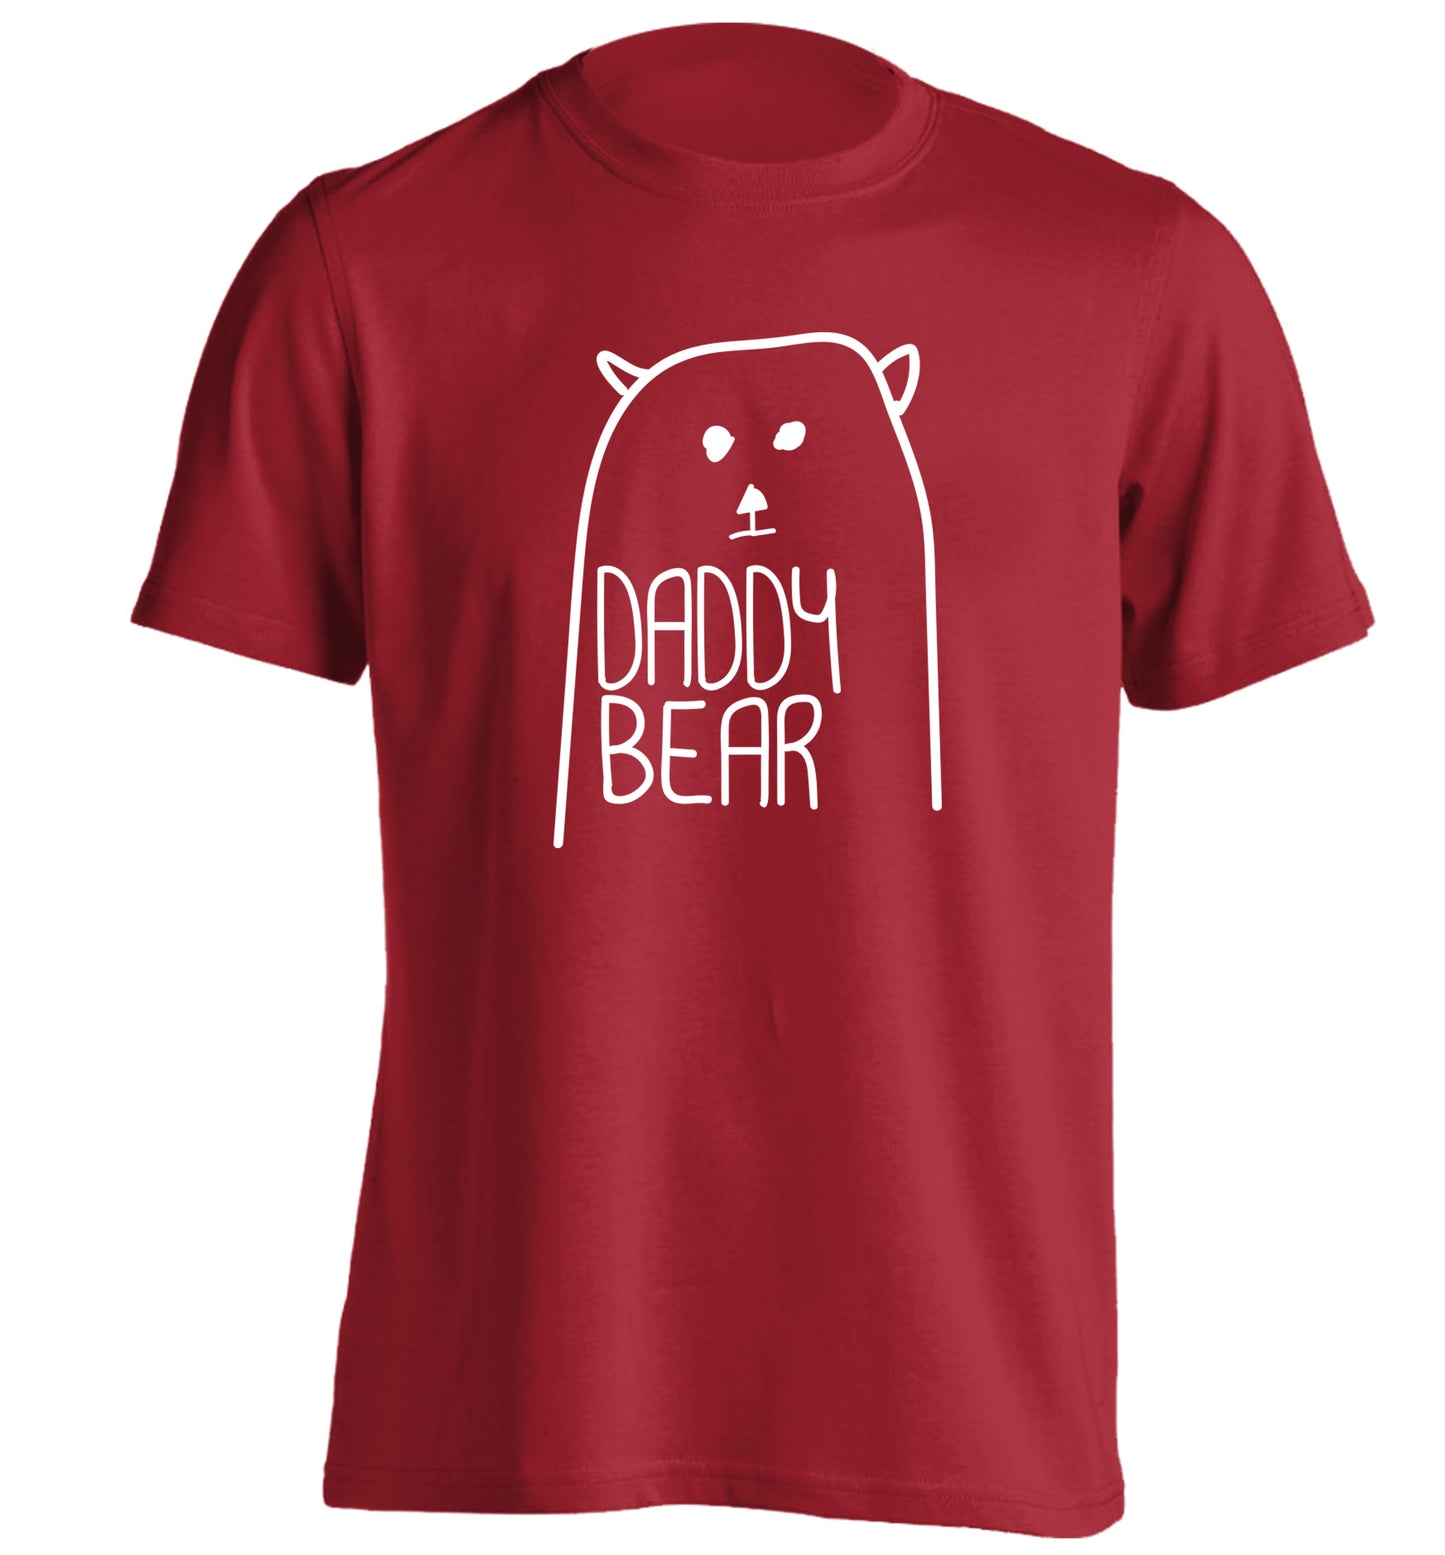 Daddy bear adults unisex red Tshirt 2XL